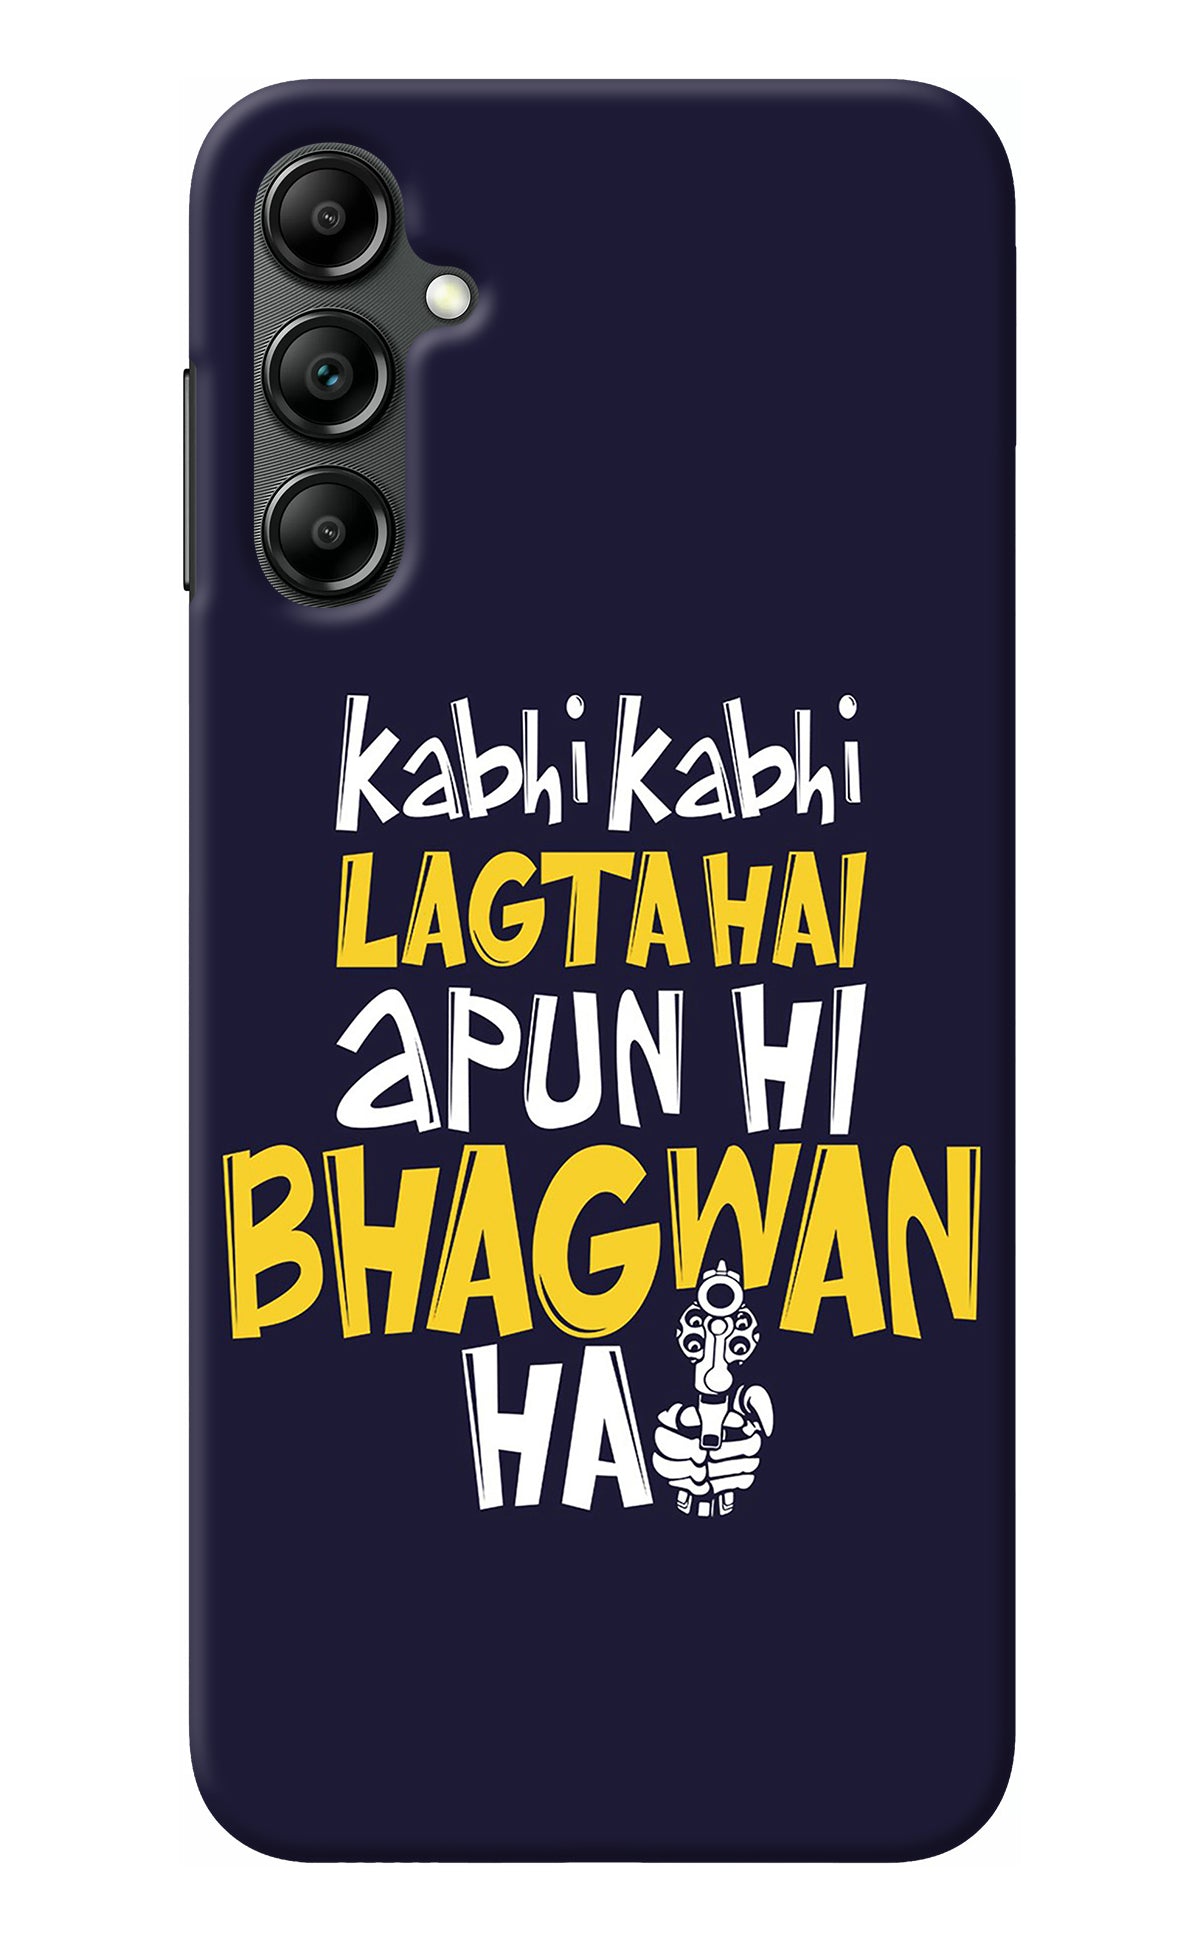 Kabhi Kabhi Lagta Hai Apun Hi Bhagwan Hai Samsung A14 5G Back Cover